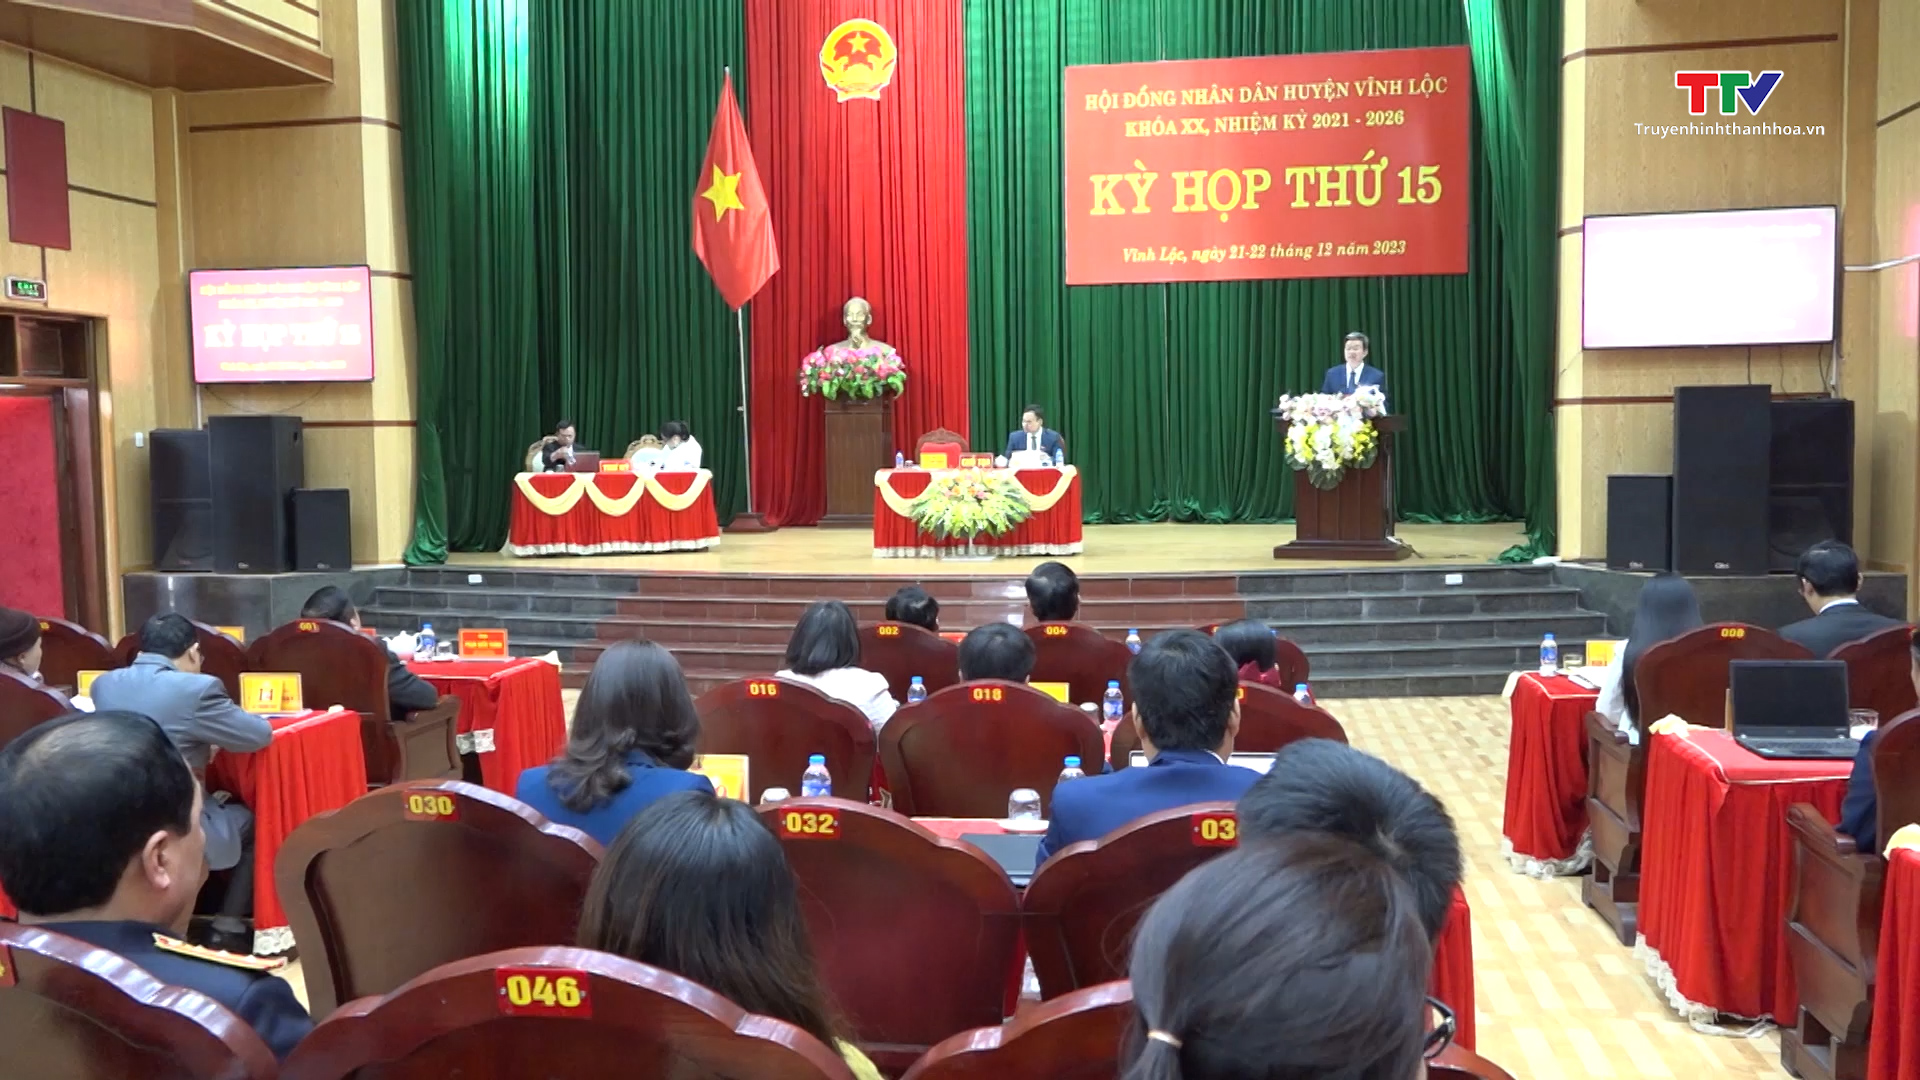 Kỳ họp thứ 15, HĐND huyện Vĩnh Lộc khóa XX, nhiệm kỳ 2021 - 2026- Ảnh 1.